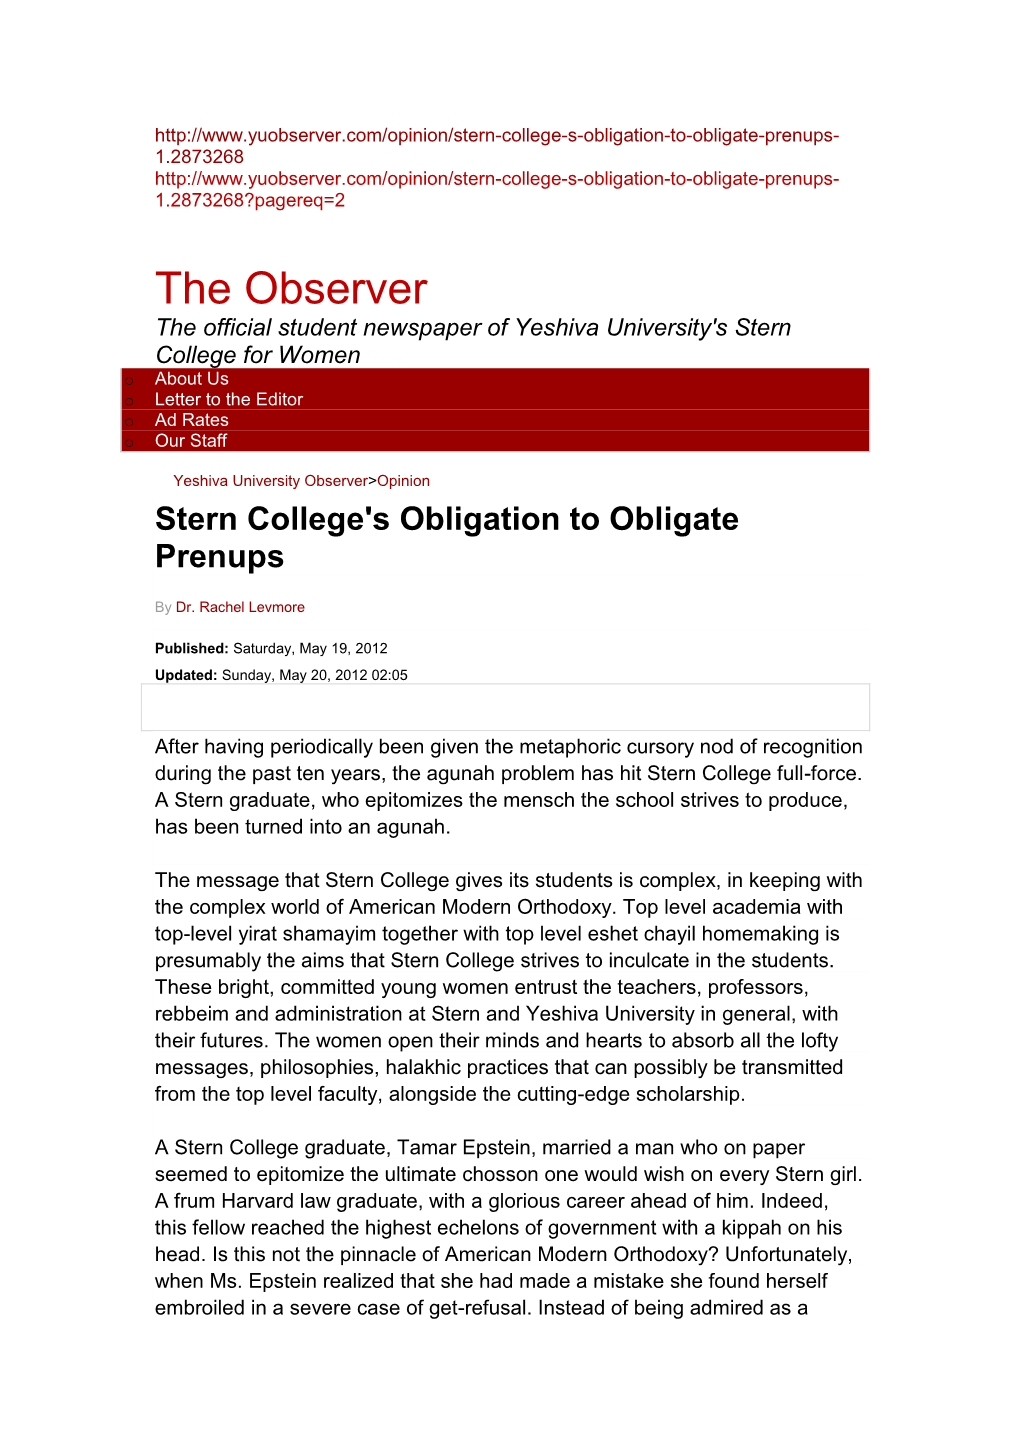 Stern College's Obligation to Obligate Prenups